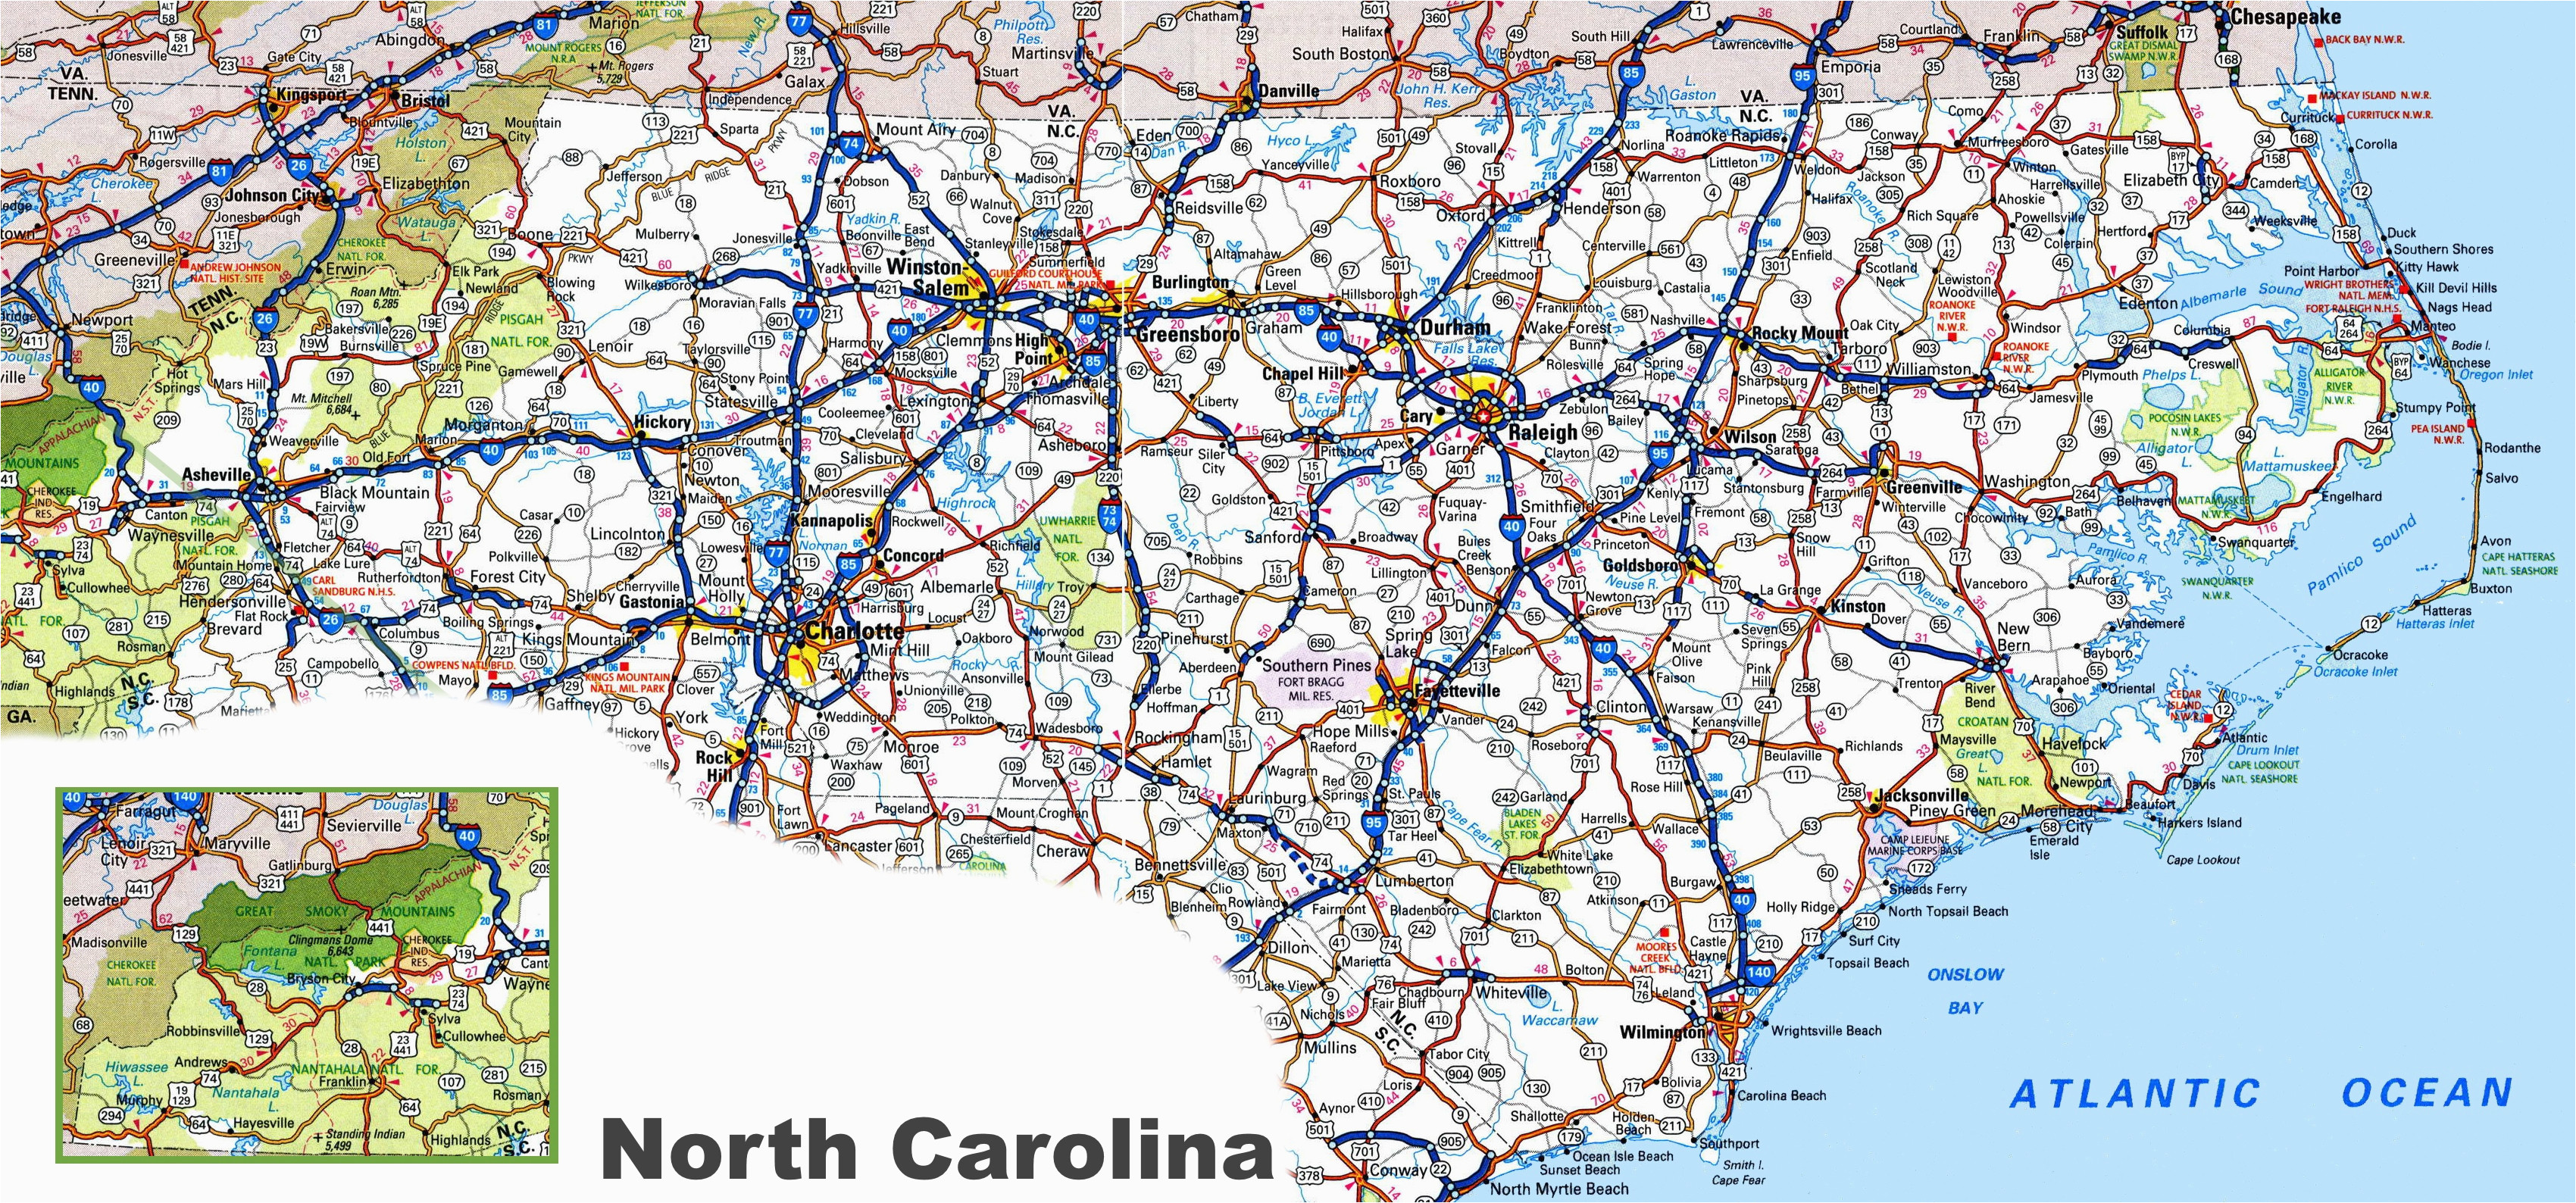 Road Map Of South Carolina And North Carolina North Carolina Road Map Of Road Map Of South Carolina And North Carolina 